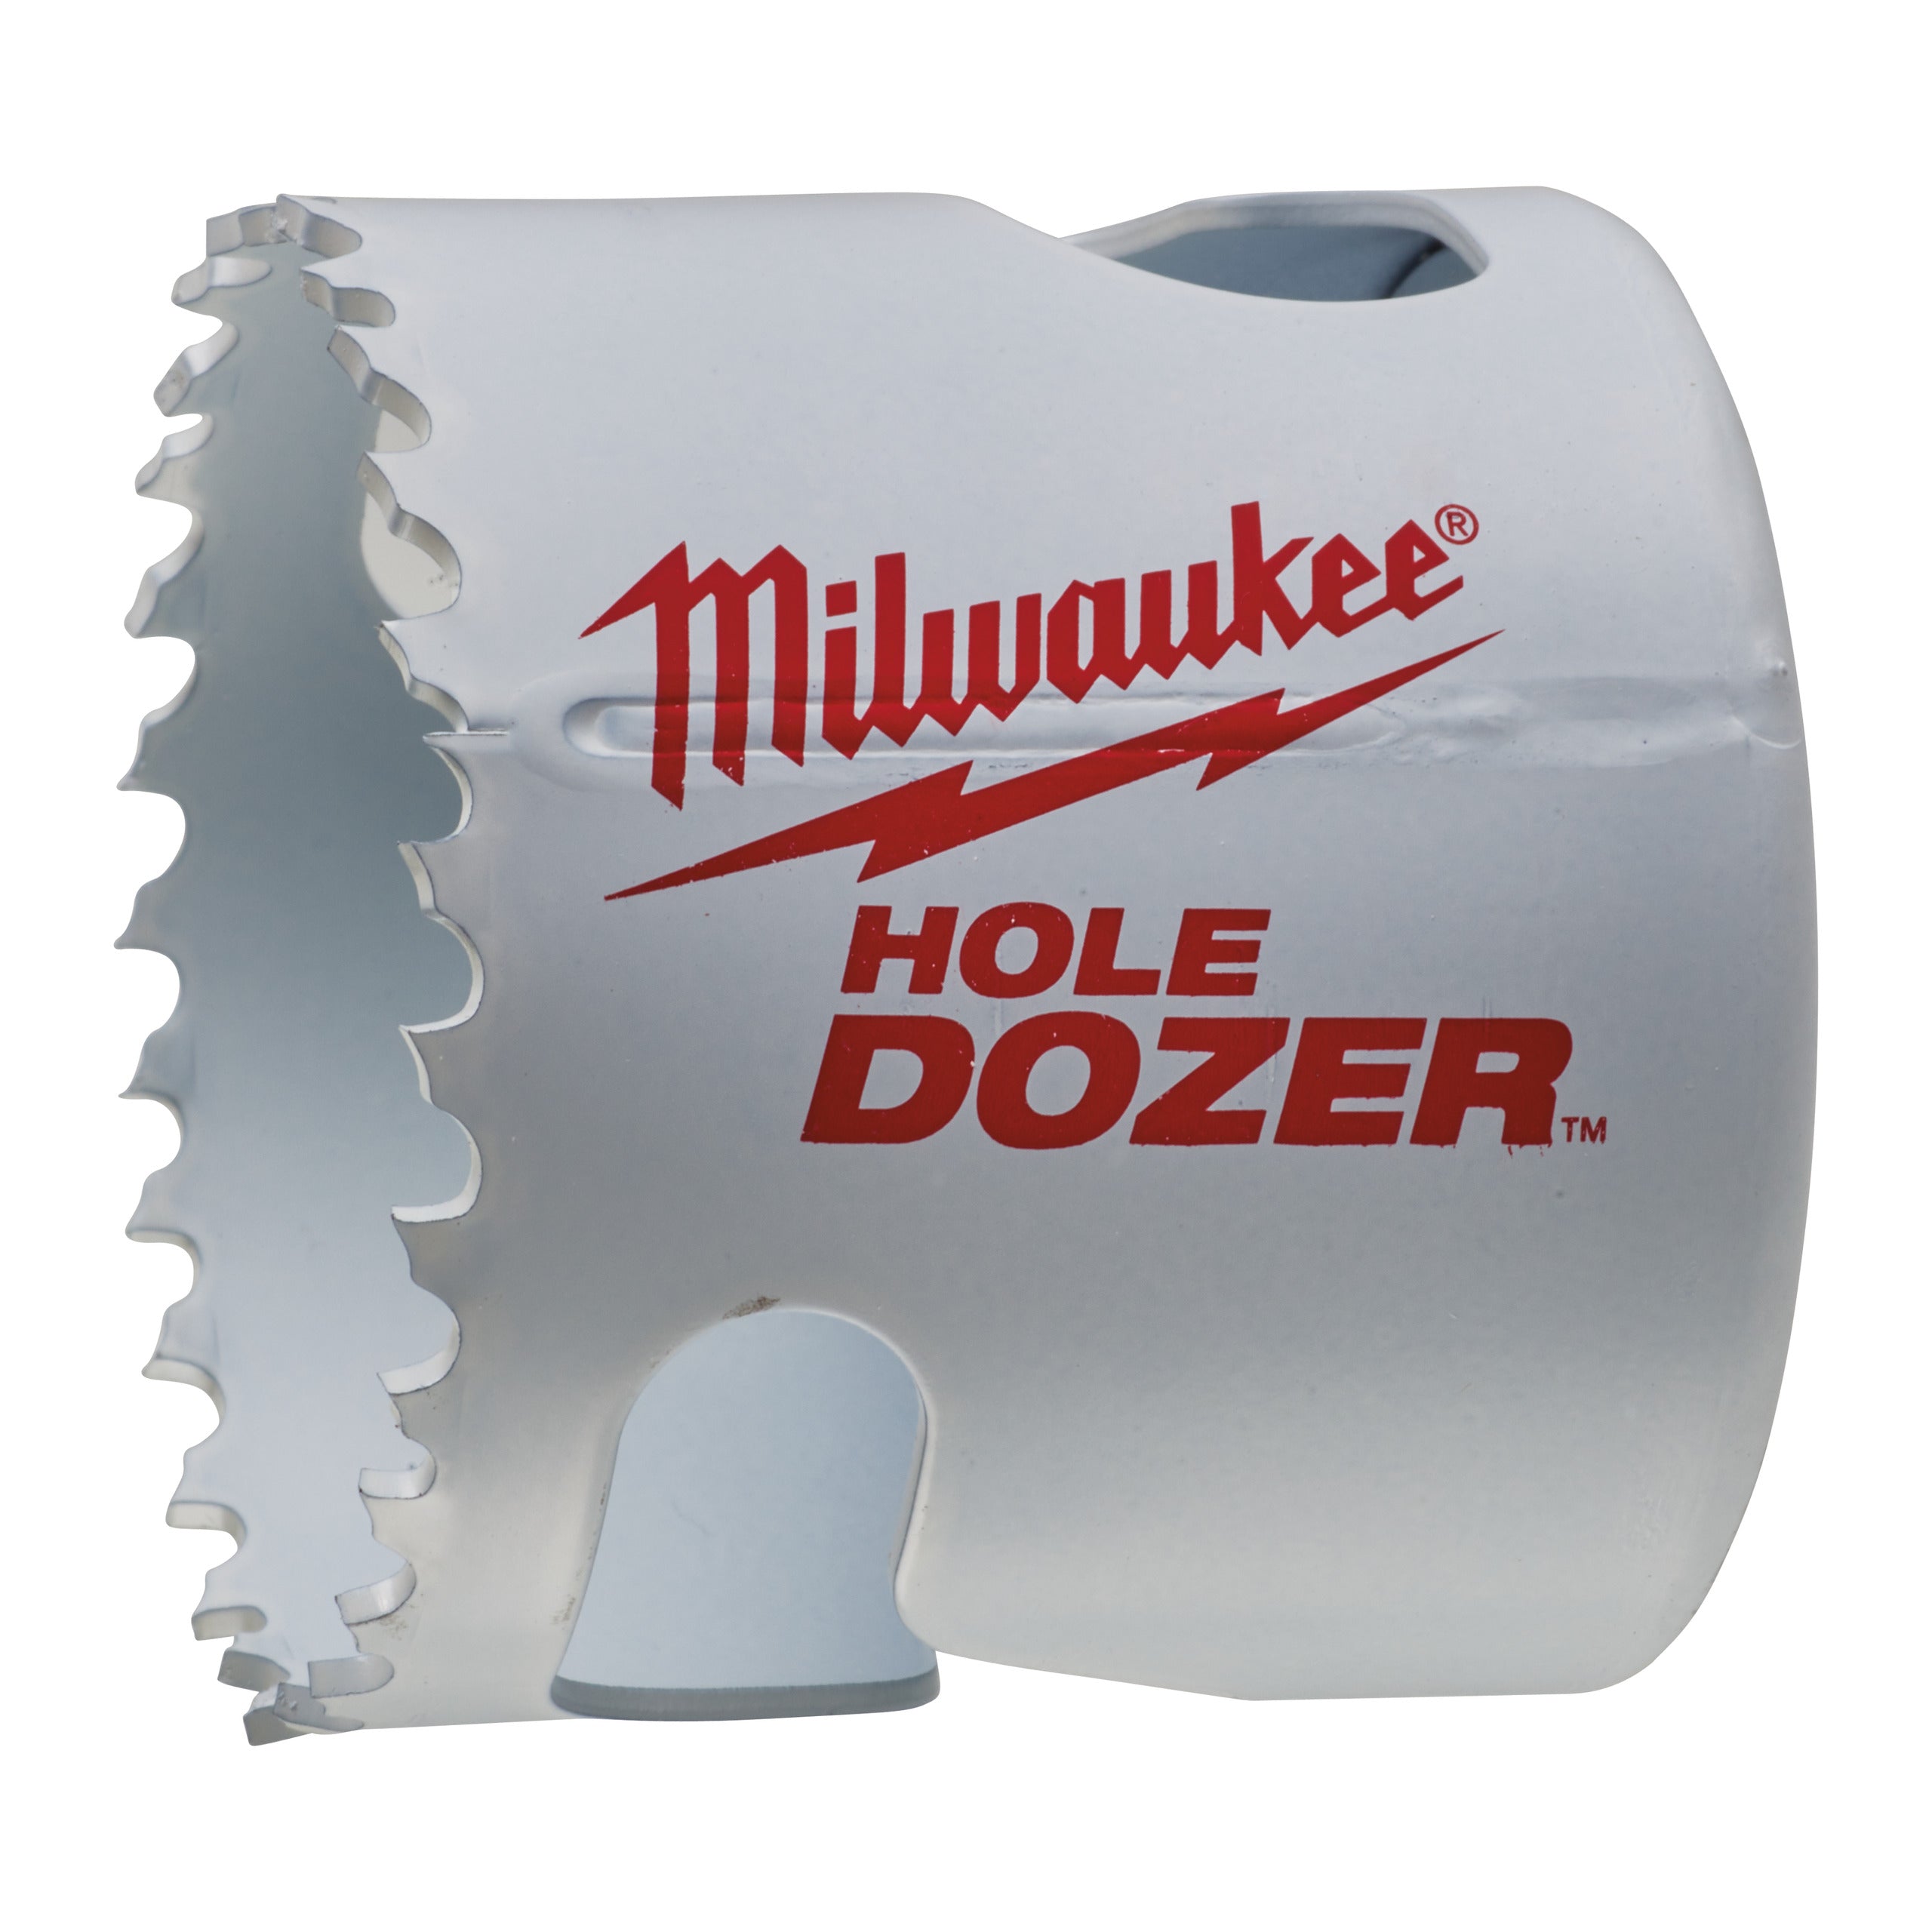 Carotă Milwaukee HOLE DOZER™ bi-metal Ø56 mm 49560127